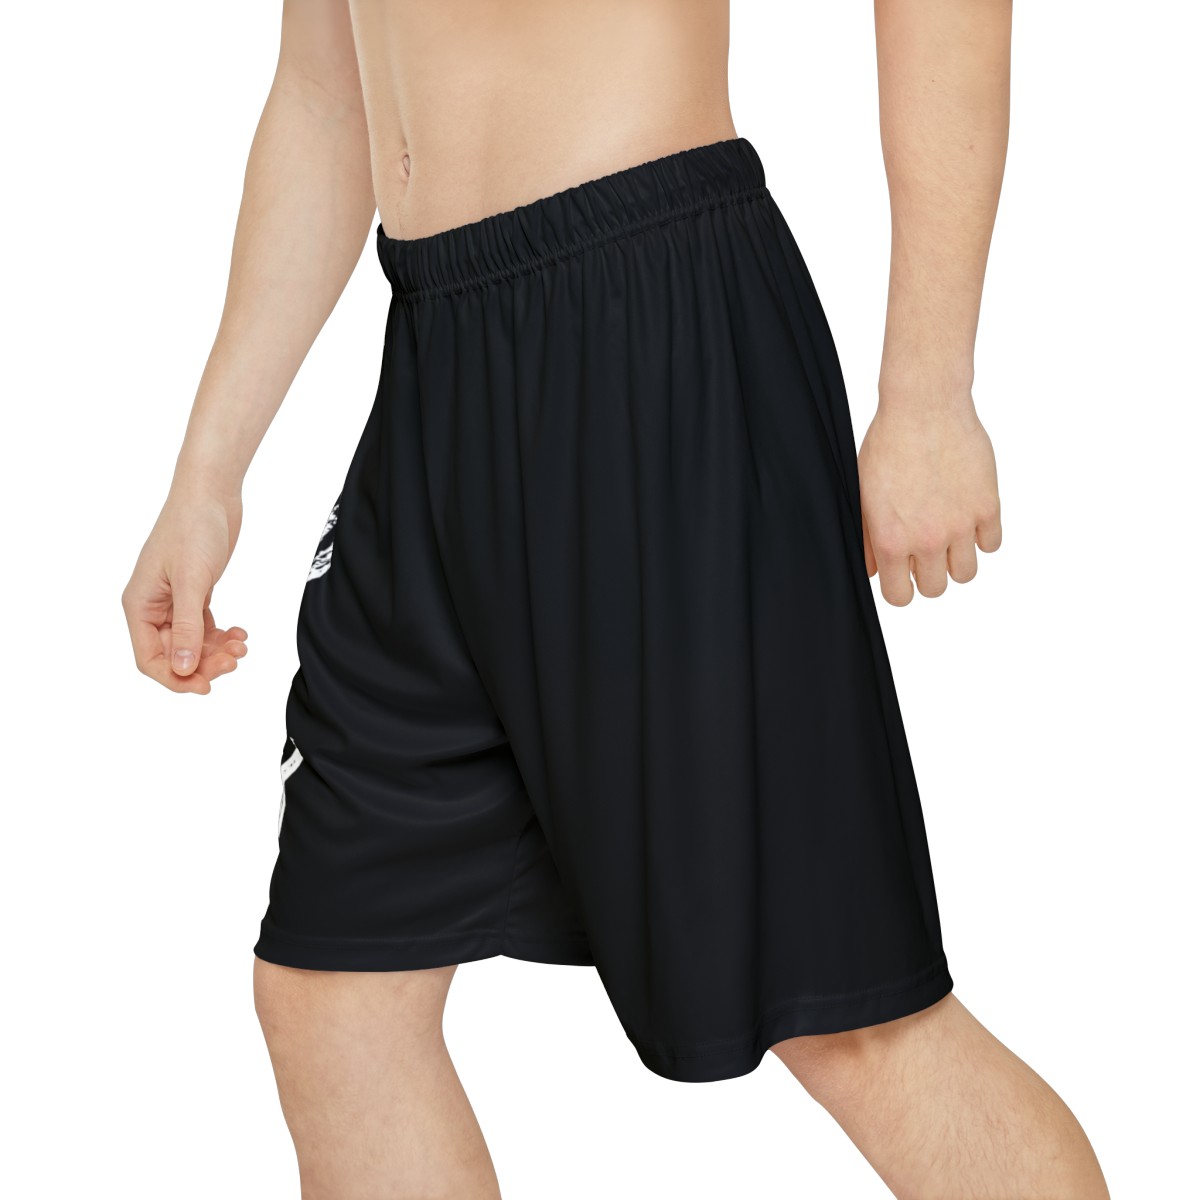  Men’s Sports Shorts product thumbnail image